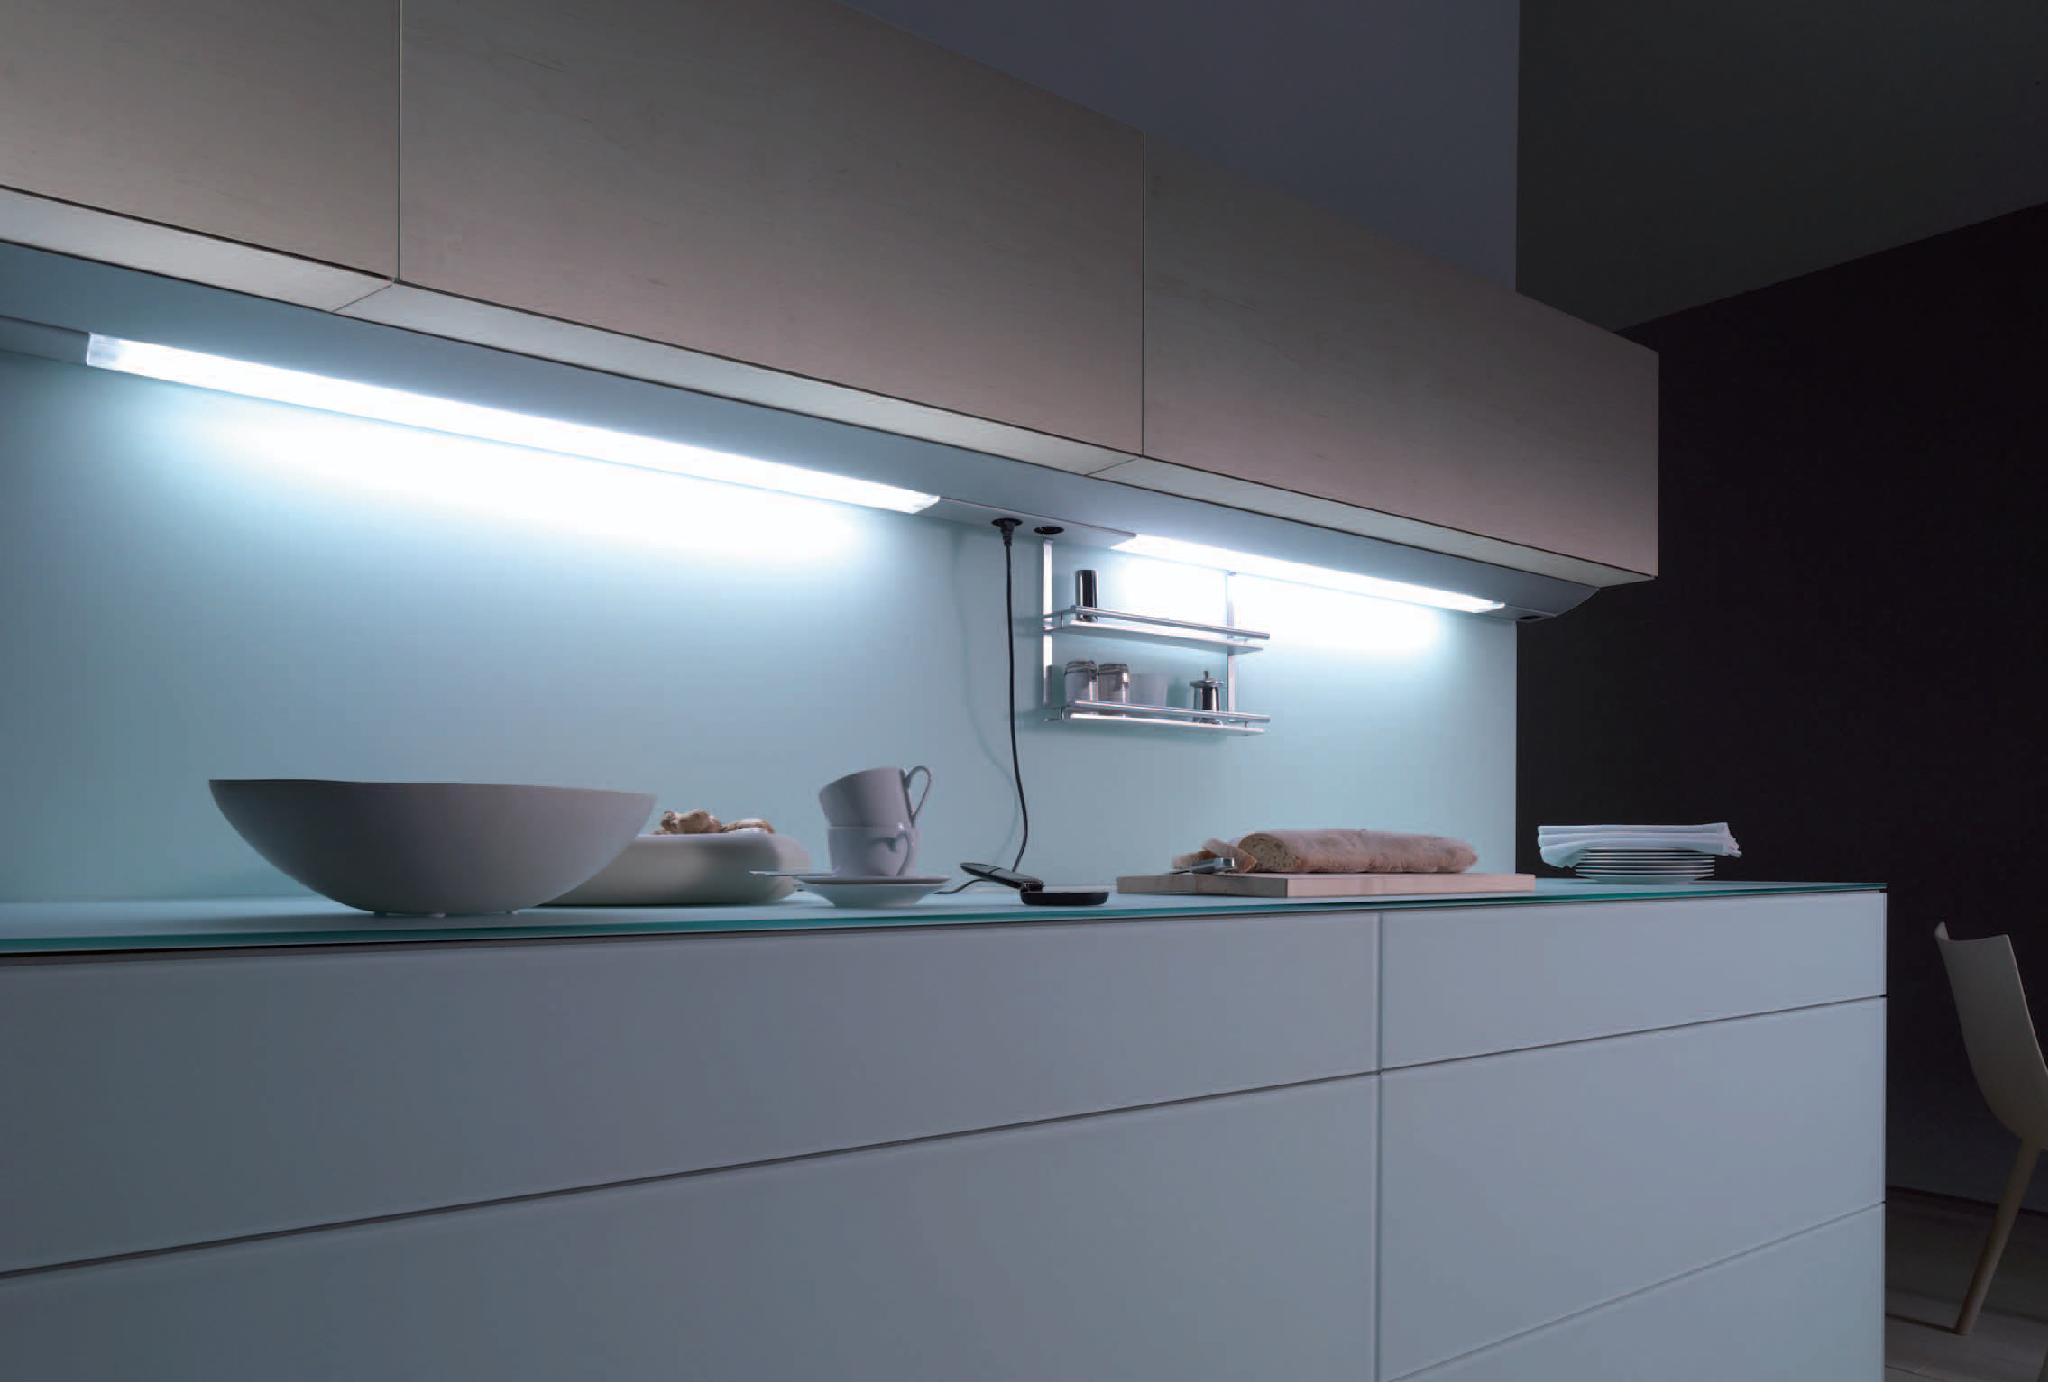 Подсветка шкафа сенсорная. Линейный светильник Obi Kitchen led-144. Подсветка столешницы ikea для кухни под шкафы светодиодная. Светильник для подсветки кухни под шкафом поворотный Luka 79154/08/36. Линейный светильник Obi Kitchen led-54.